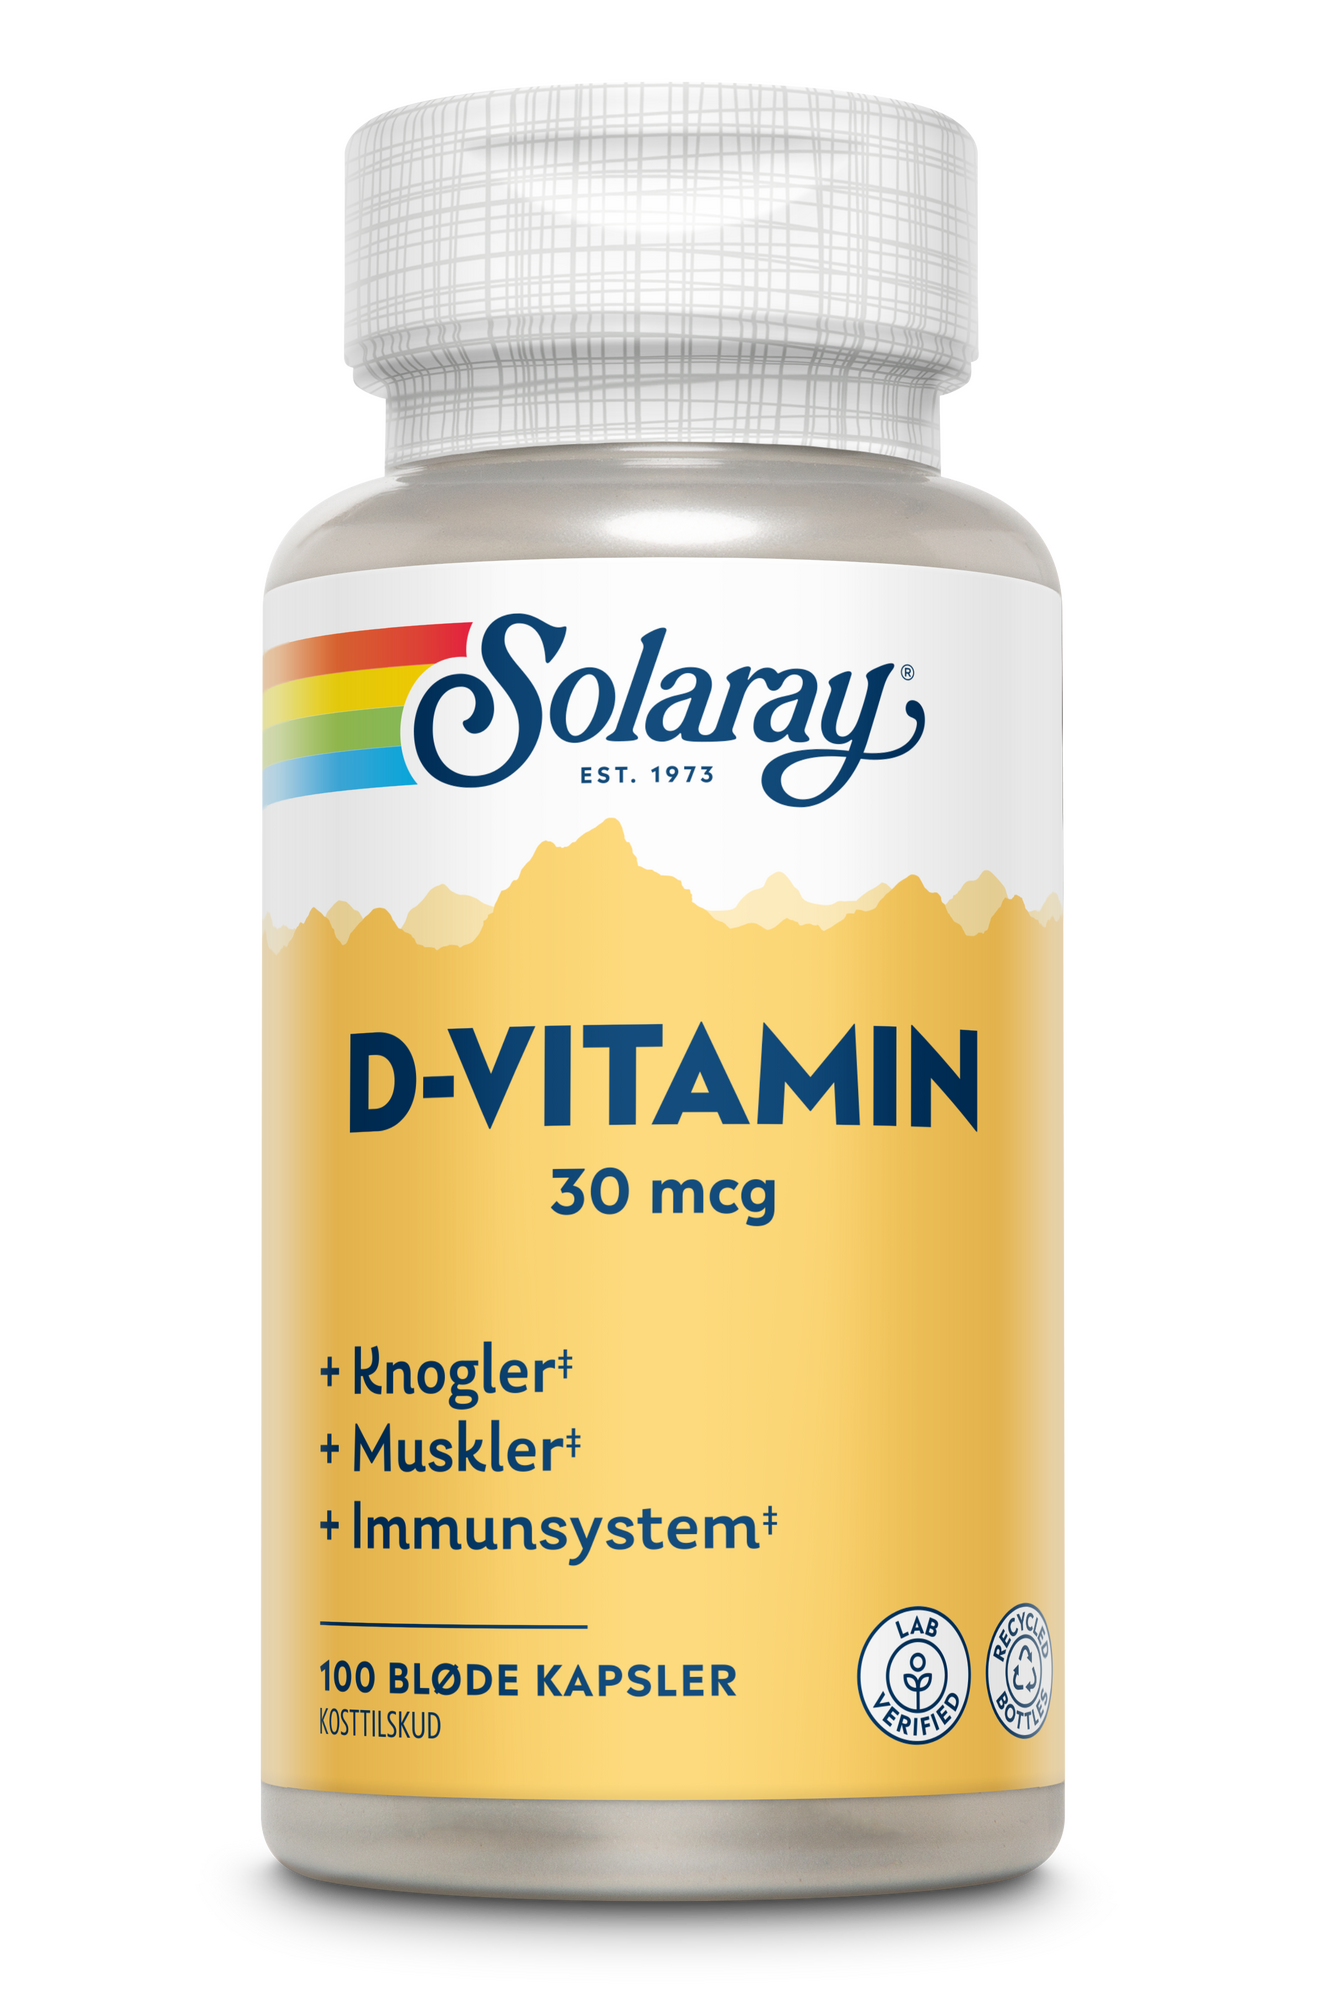 Billede af D-vitamin 30 mcg Solaray 100 kapsler hos Duft og Natur